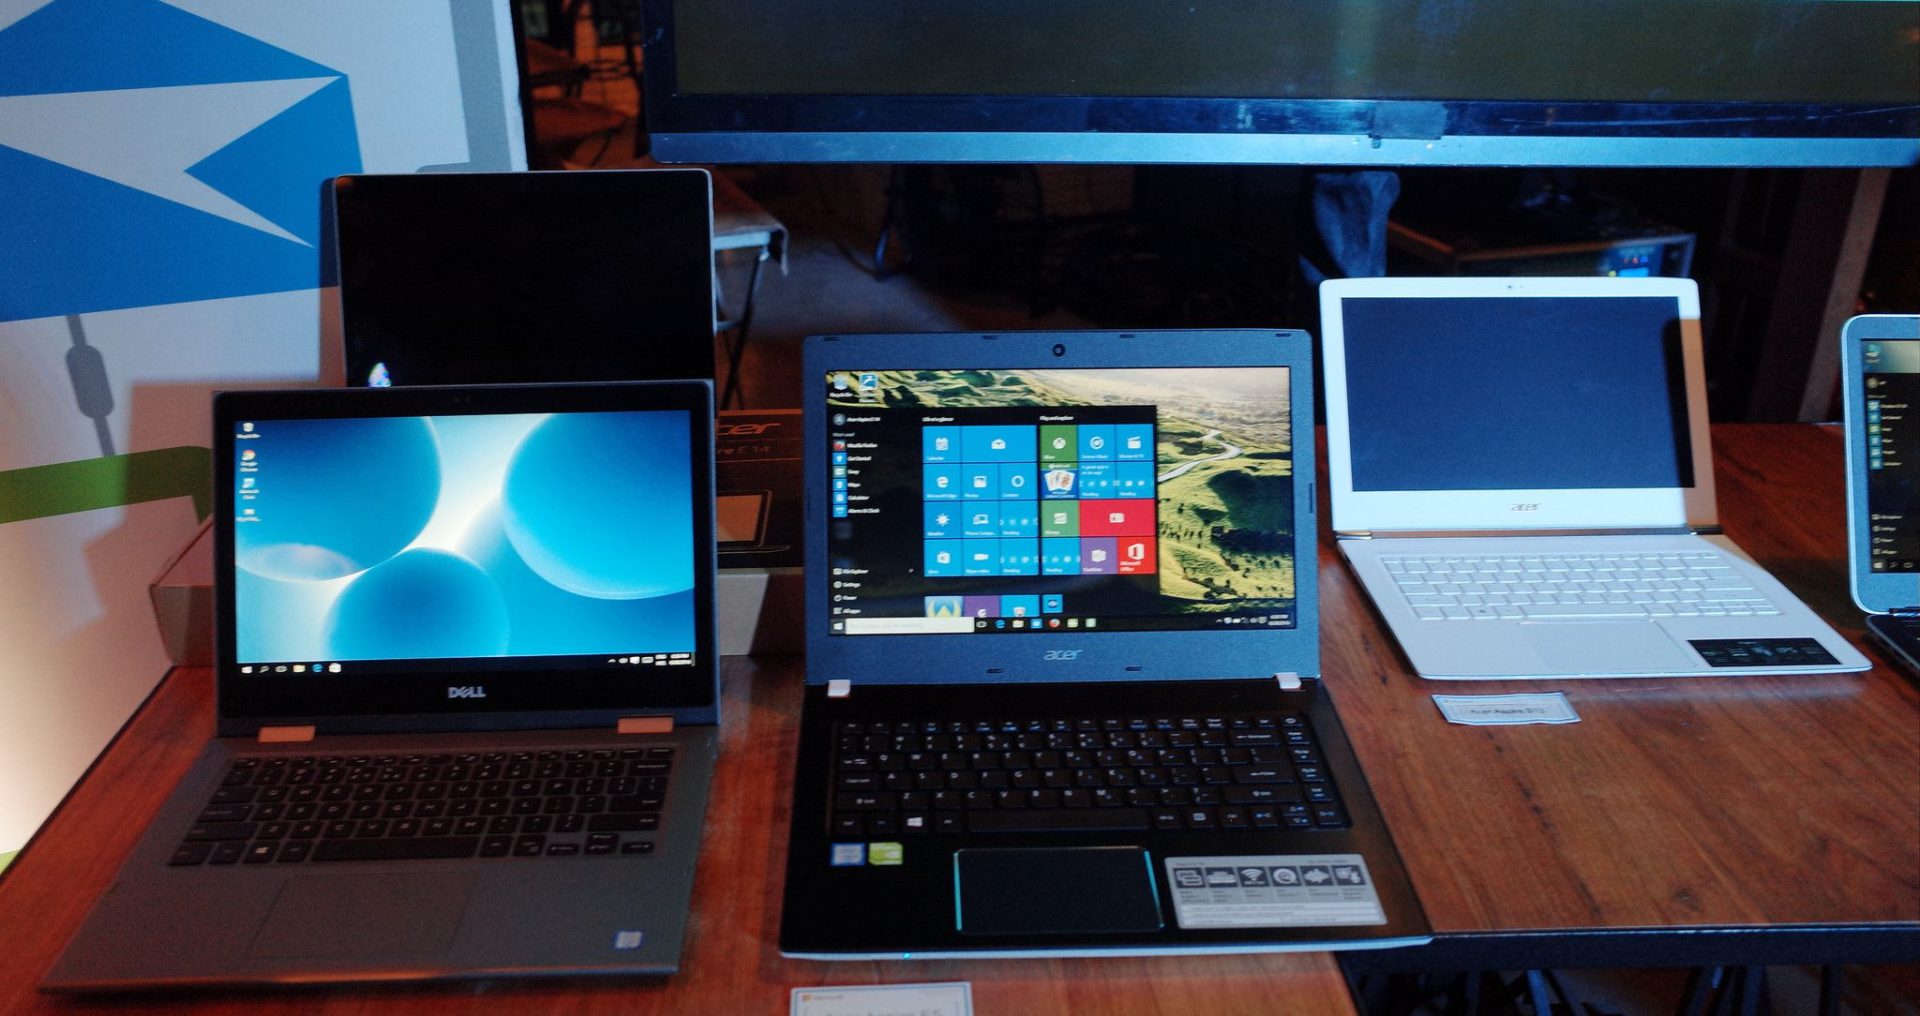 คุยกับไมโครซอฟท์ – Surface Book ยังไม่เข้าไทย, Windows 10 อัปฟรีถึงสิ้นเดือน